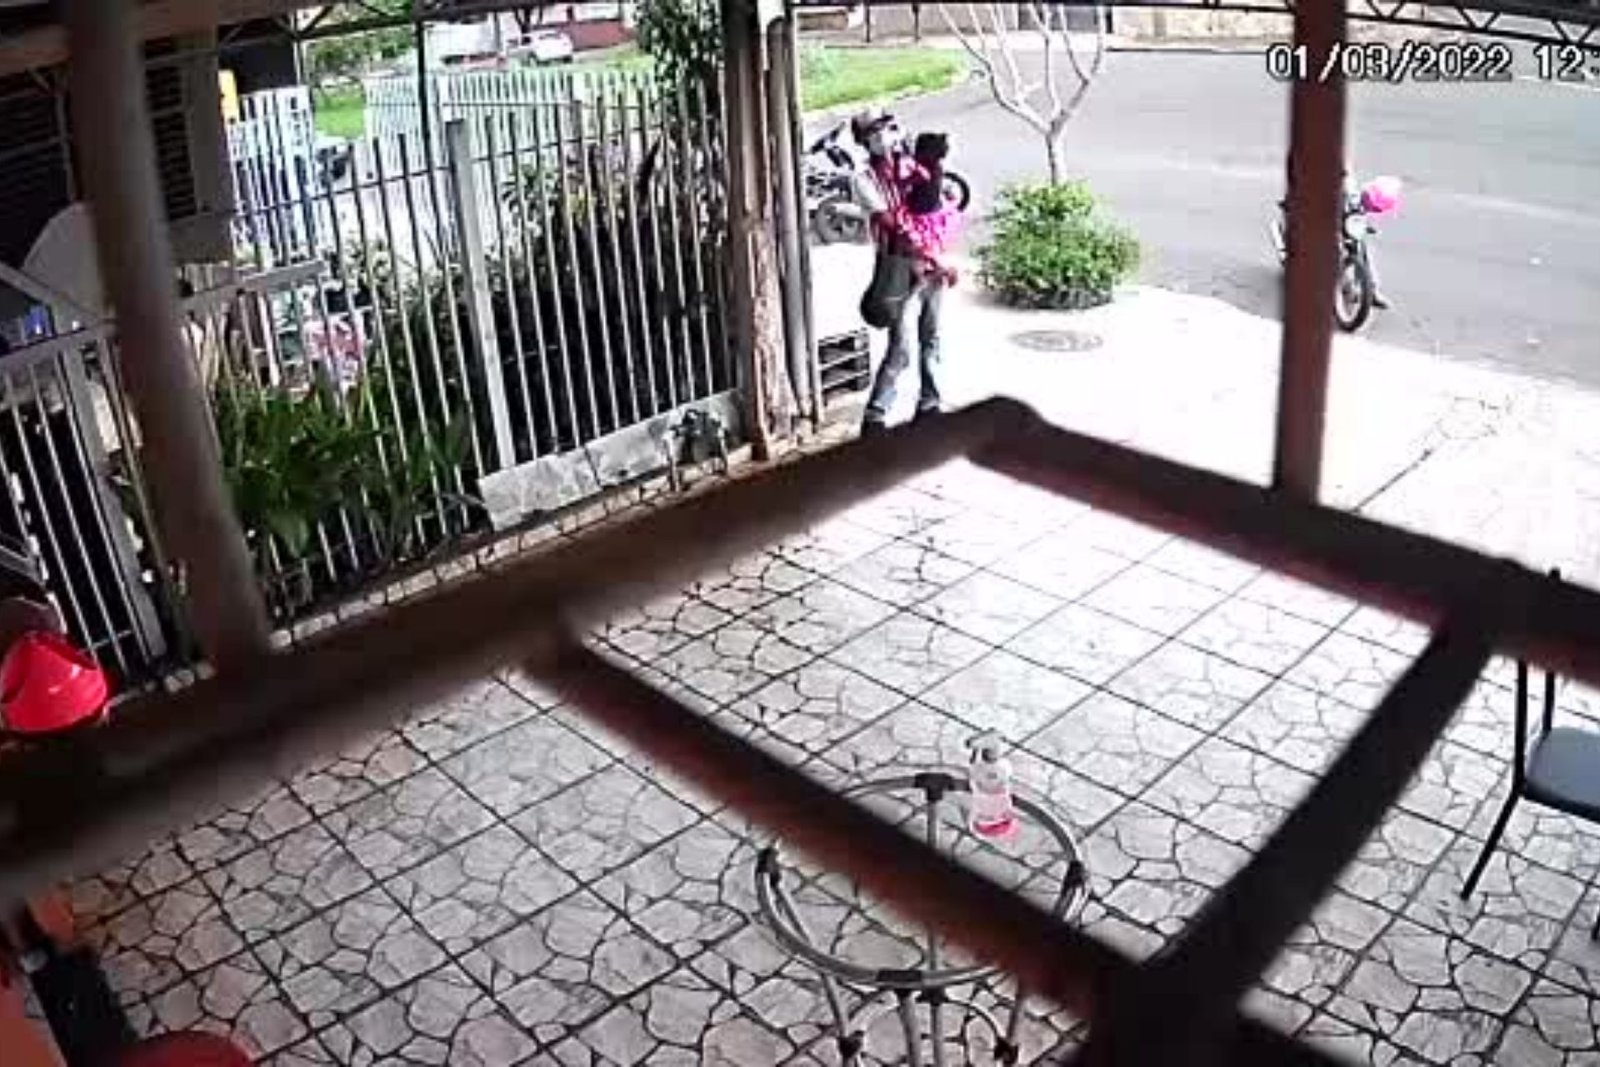 homem com crianca no colo assalta padaria em londrina video